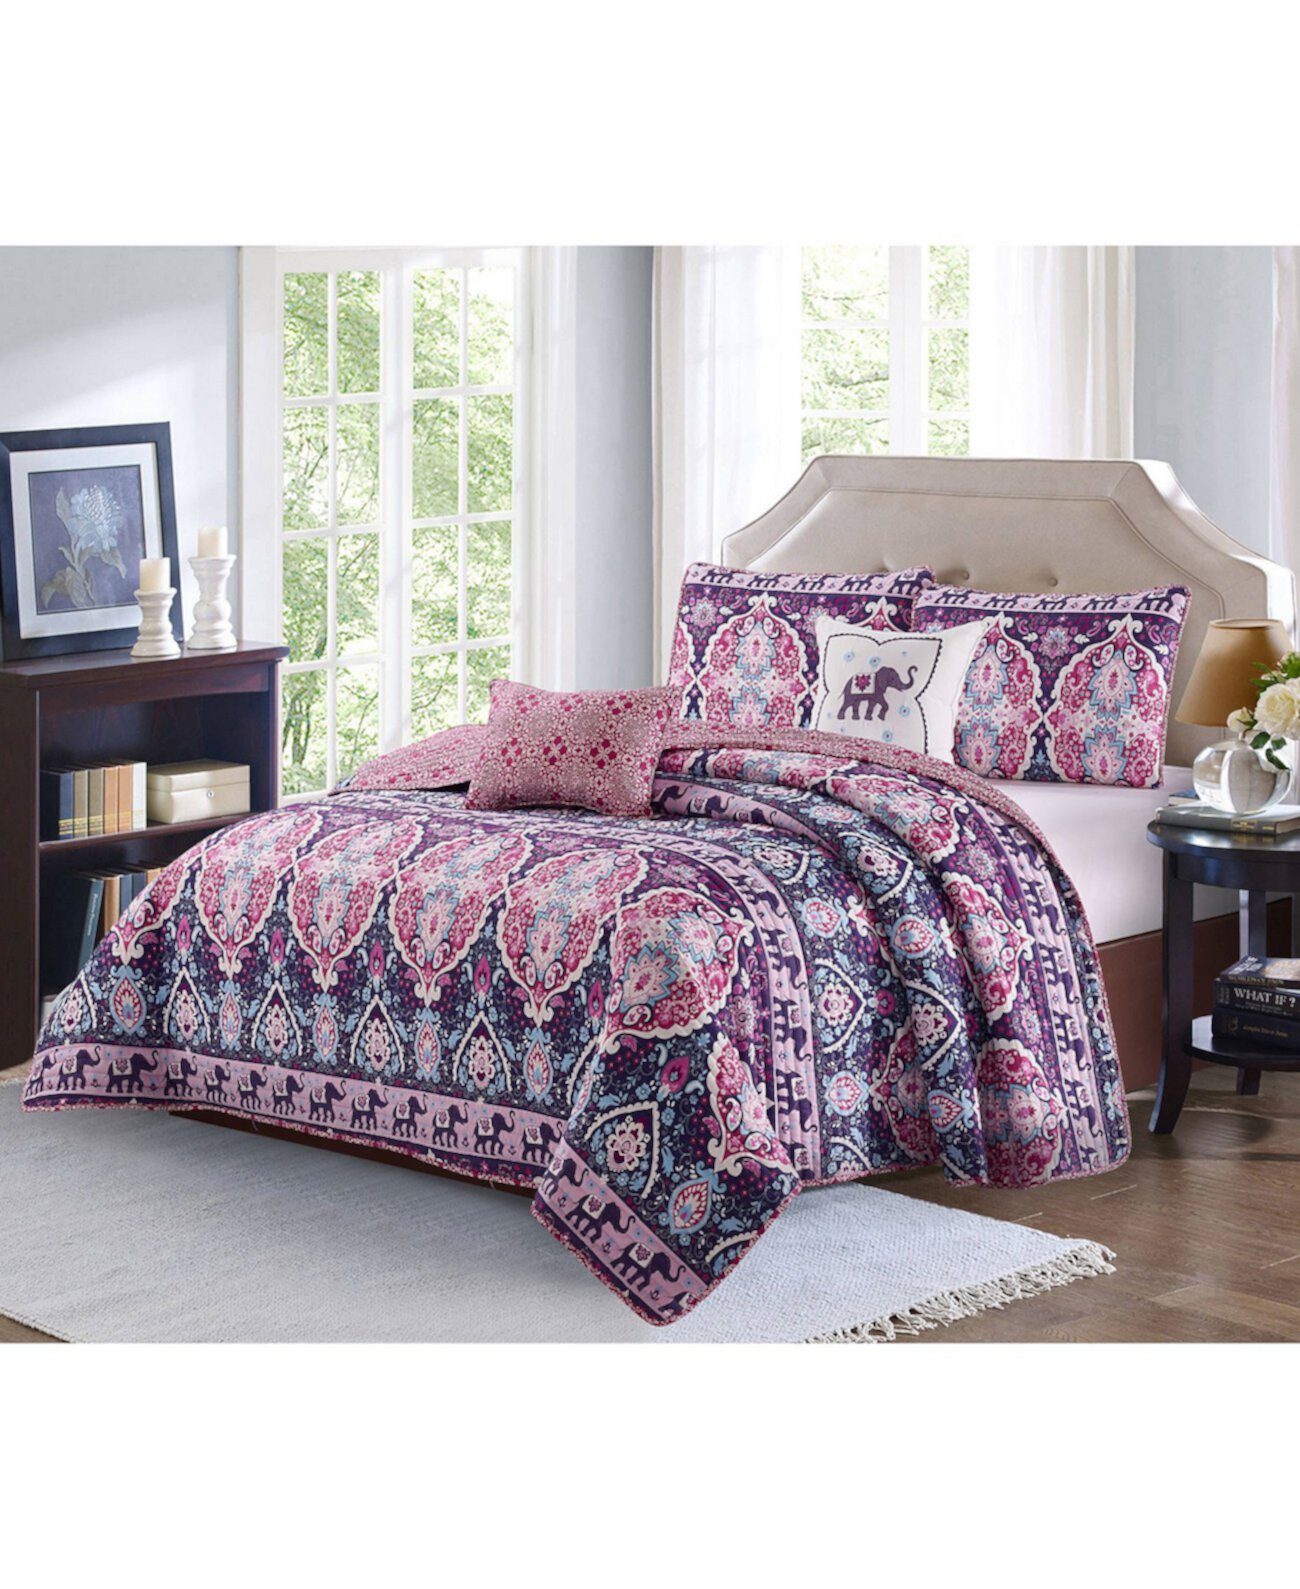 Комплект стеганого одеяла Victoria из 4 предметов с двумя односпальными кроватями Harper Lane